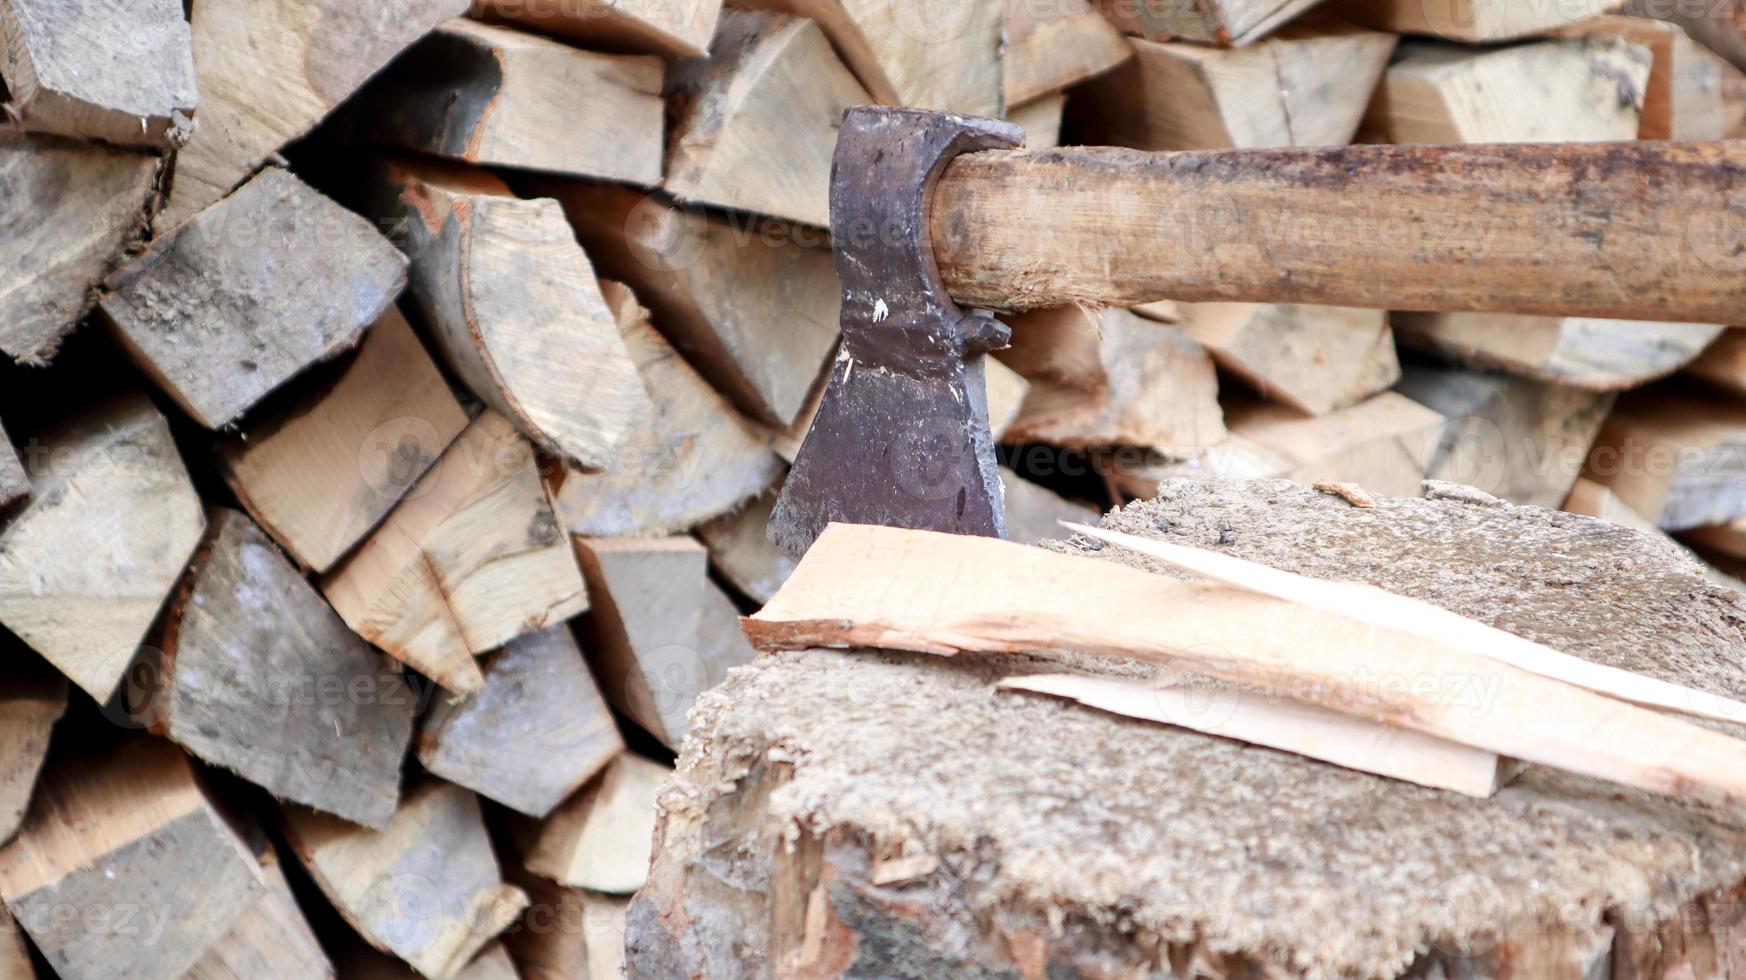 versnipperd brandhout voor de winter voor verwarming. de bijl wordt met een mes in de stronk gestoken. hakmes met een houten handvat. oogsten op de boerderij. droog brandhout gestapeld in stapels voor het verwarmen van een huis foto